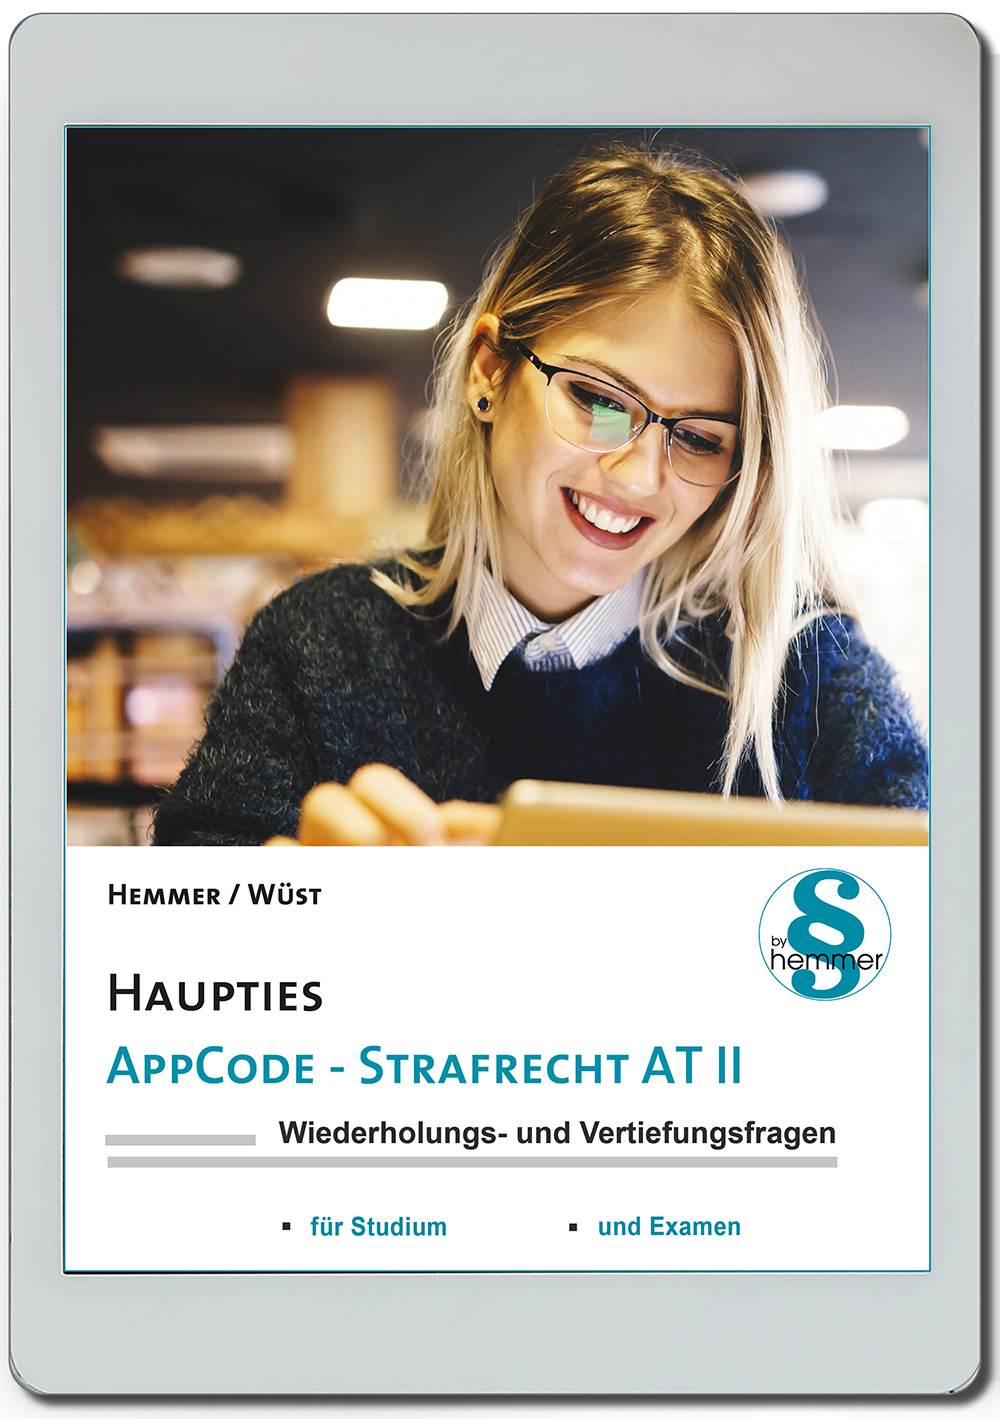 AppCode - haupties - Strafrecht AT II